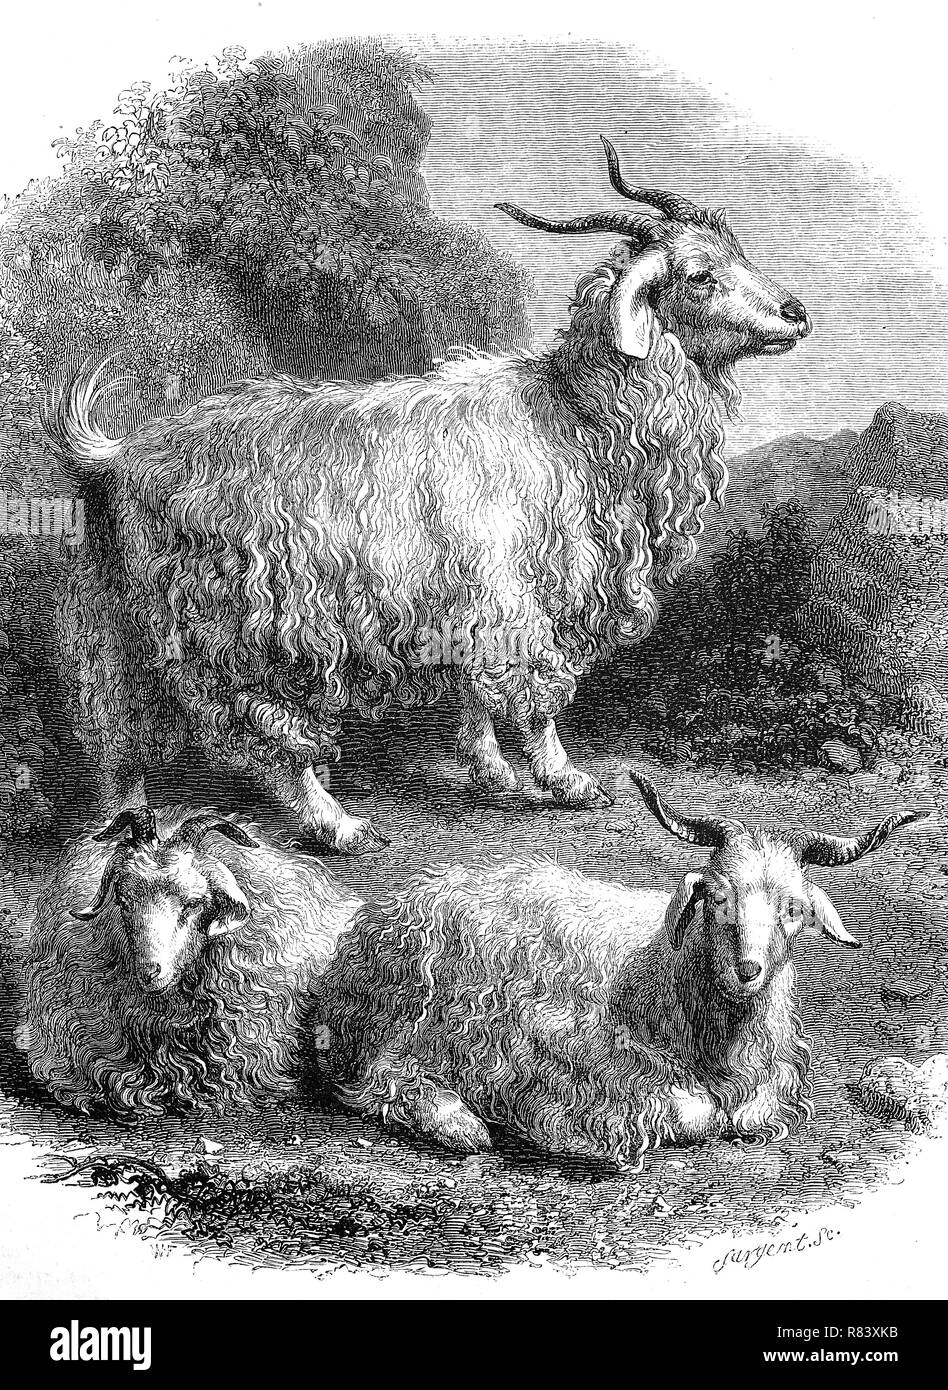 Digital verbesserte Reproduktion, Angoraziege, eine Rasse von domestizierten Ziegen, historisch als Angora bekannt, Angoraziege, Kamelziege Sterben, eine Rasse der Hausziege, Wollziege, von einer ursprünglichen Drucken aus dem Jahr 1855 Stockfoto